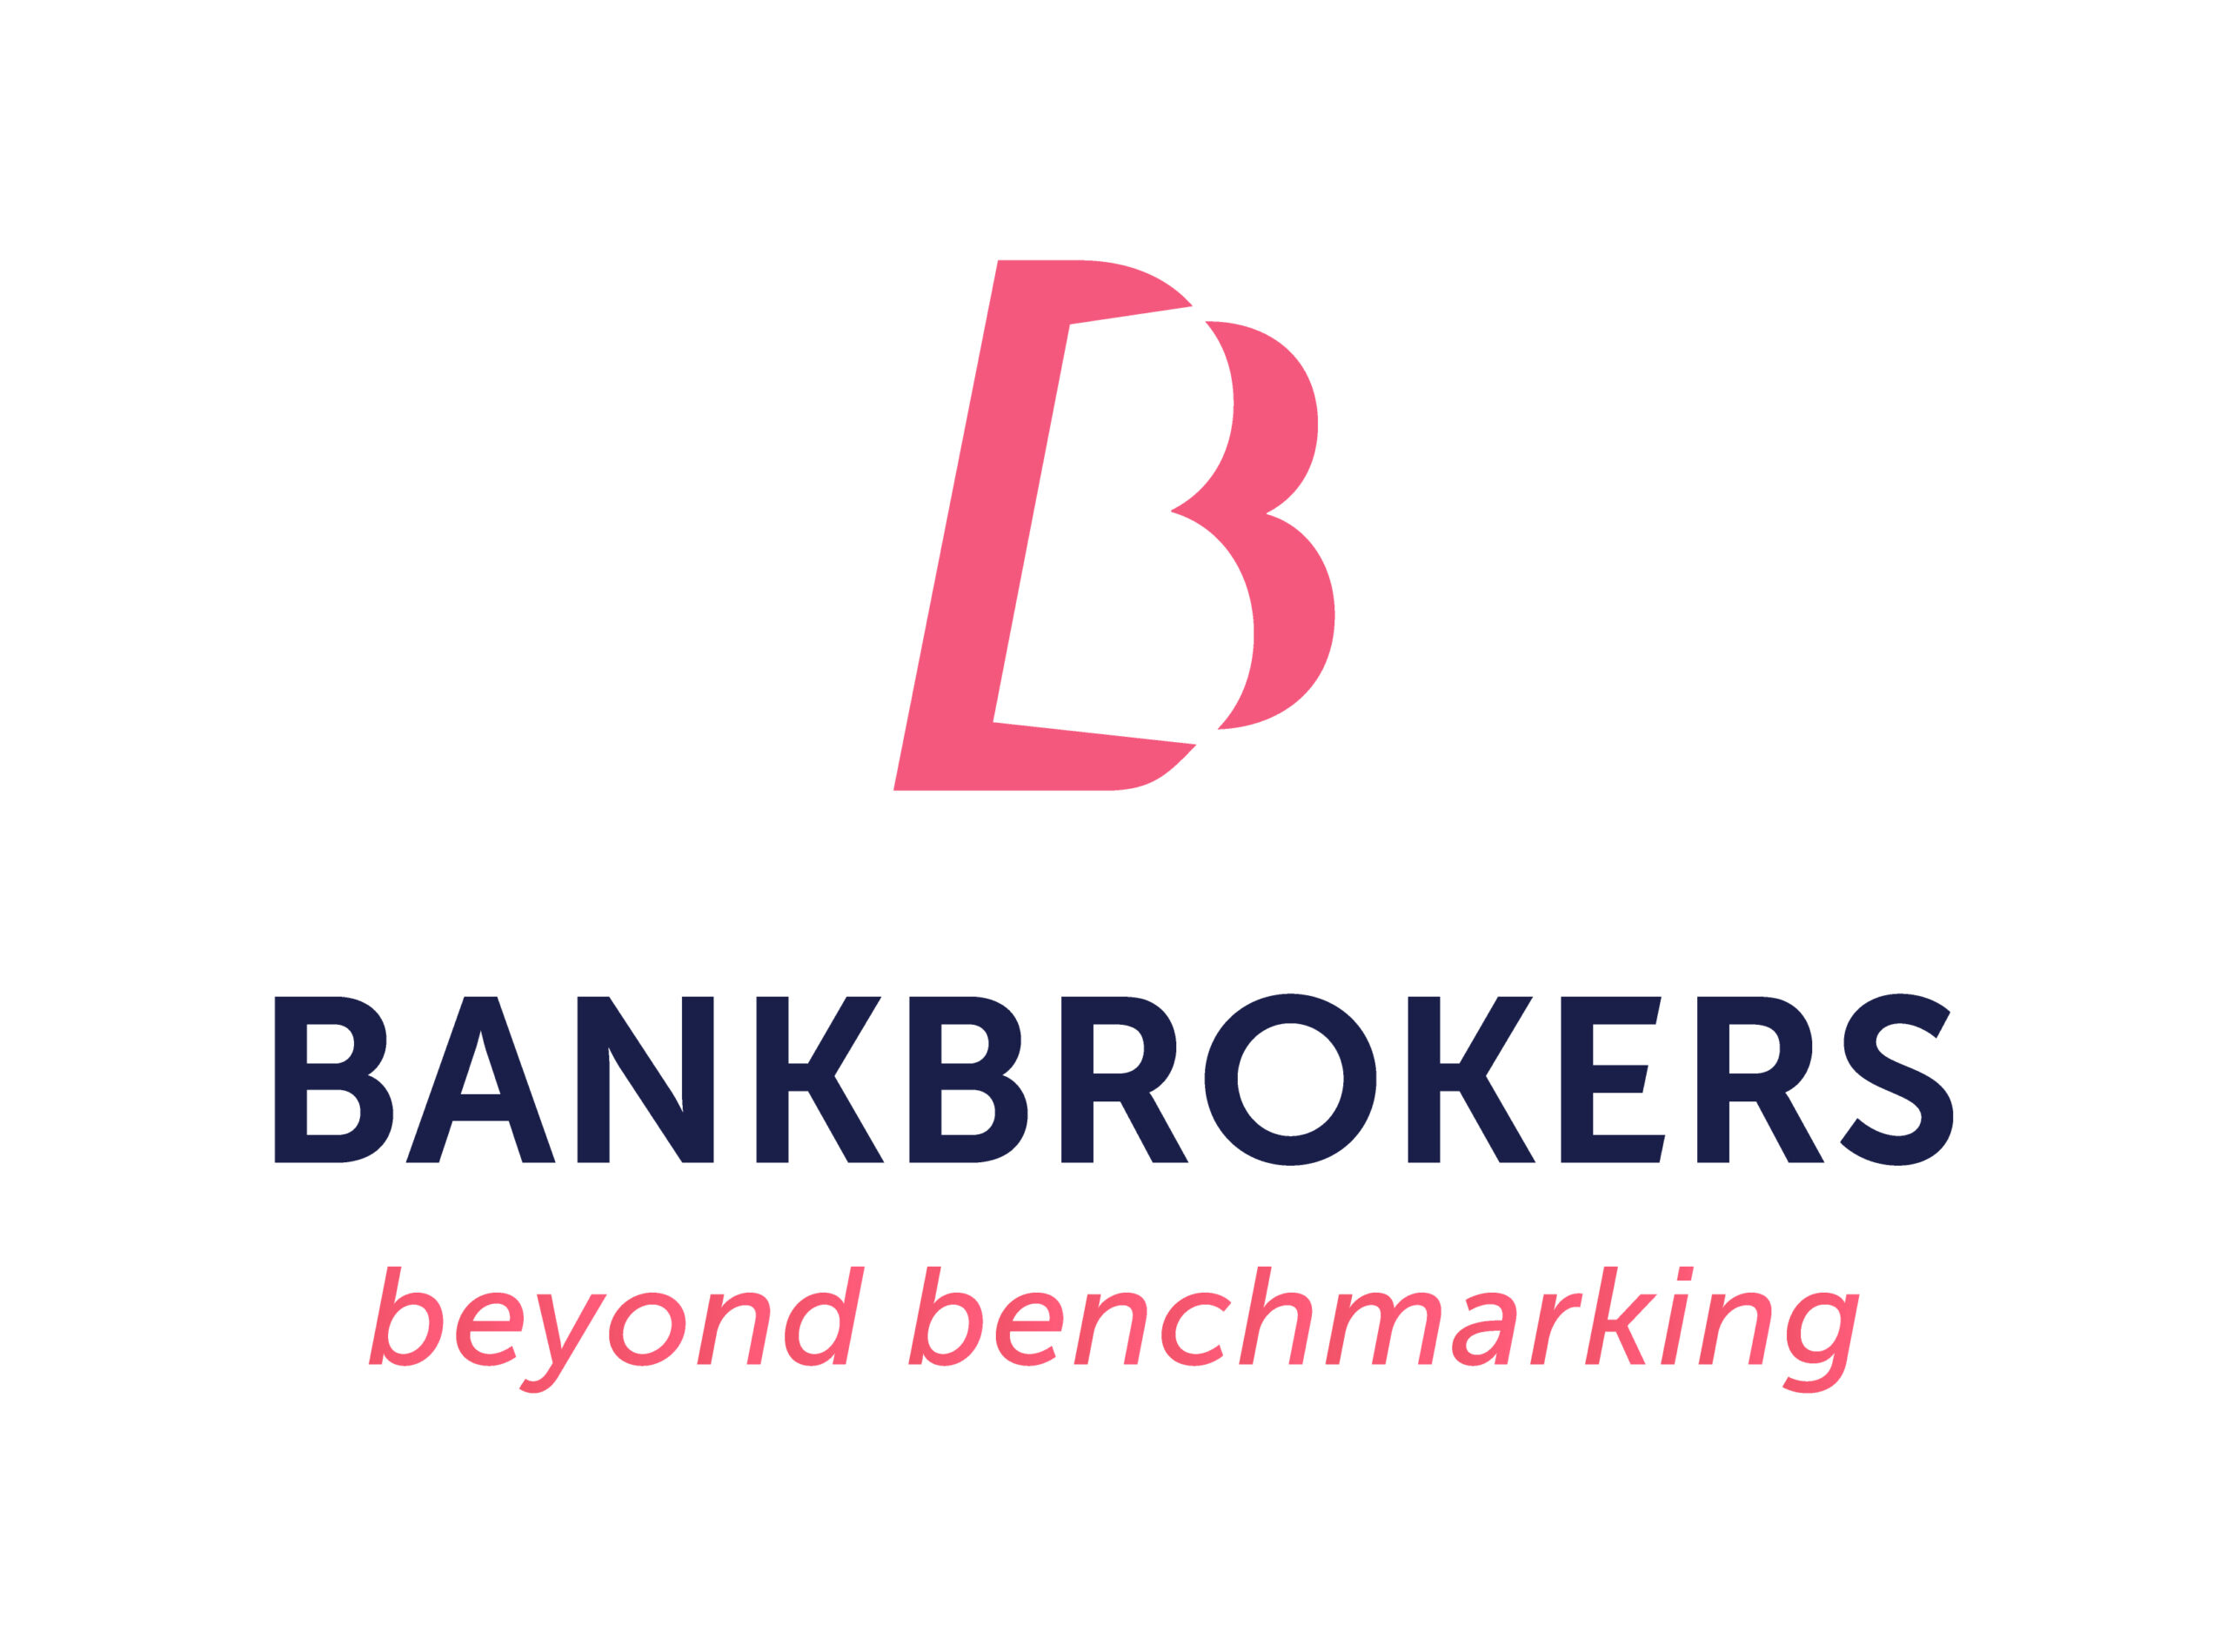 Bankbrokers